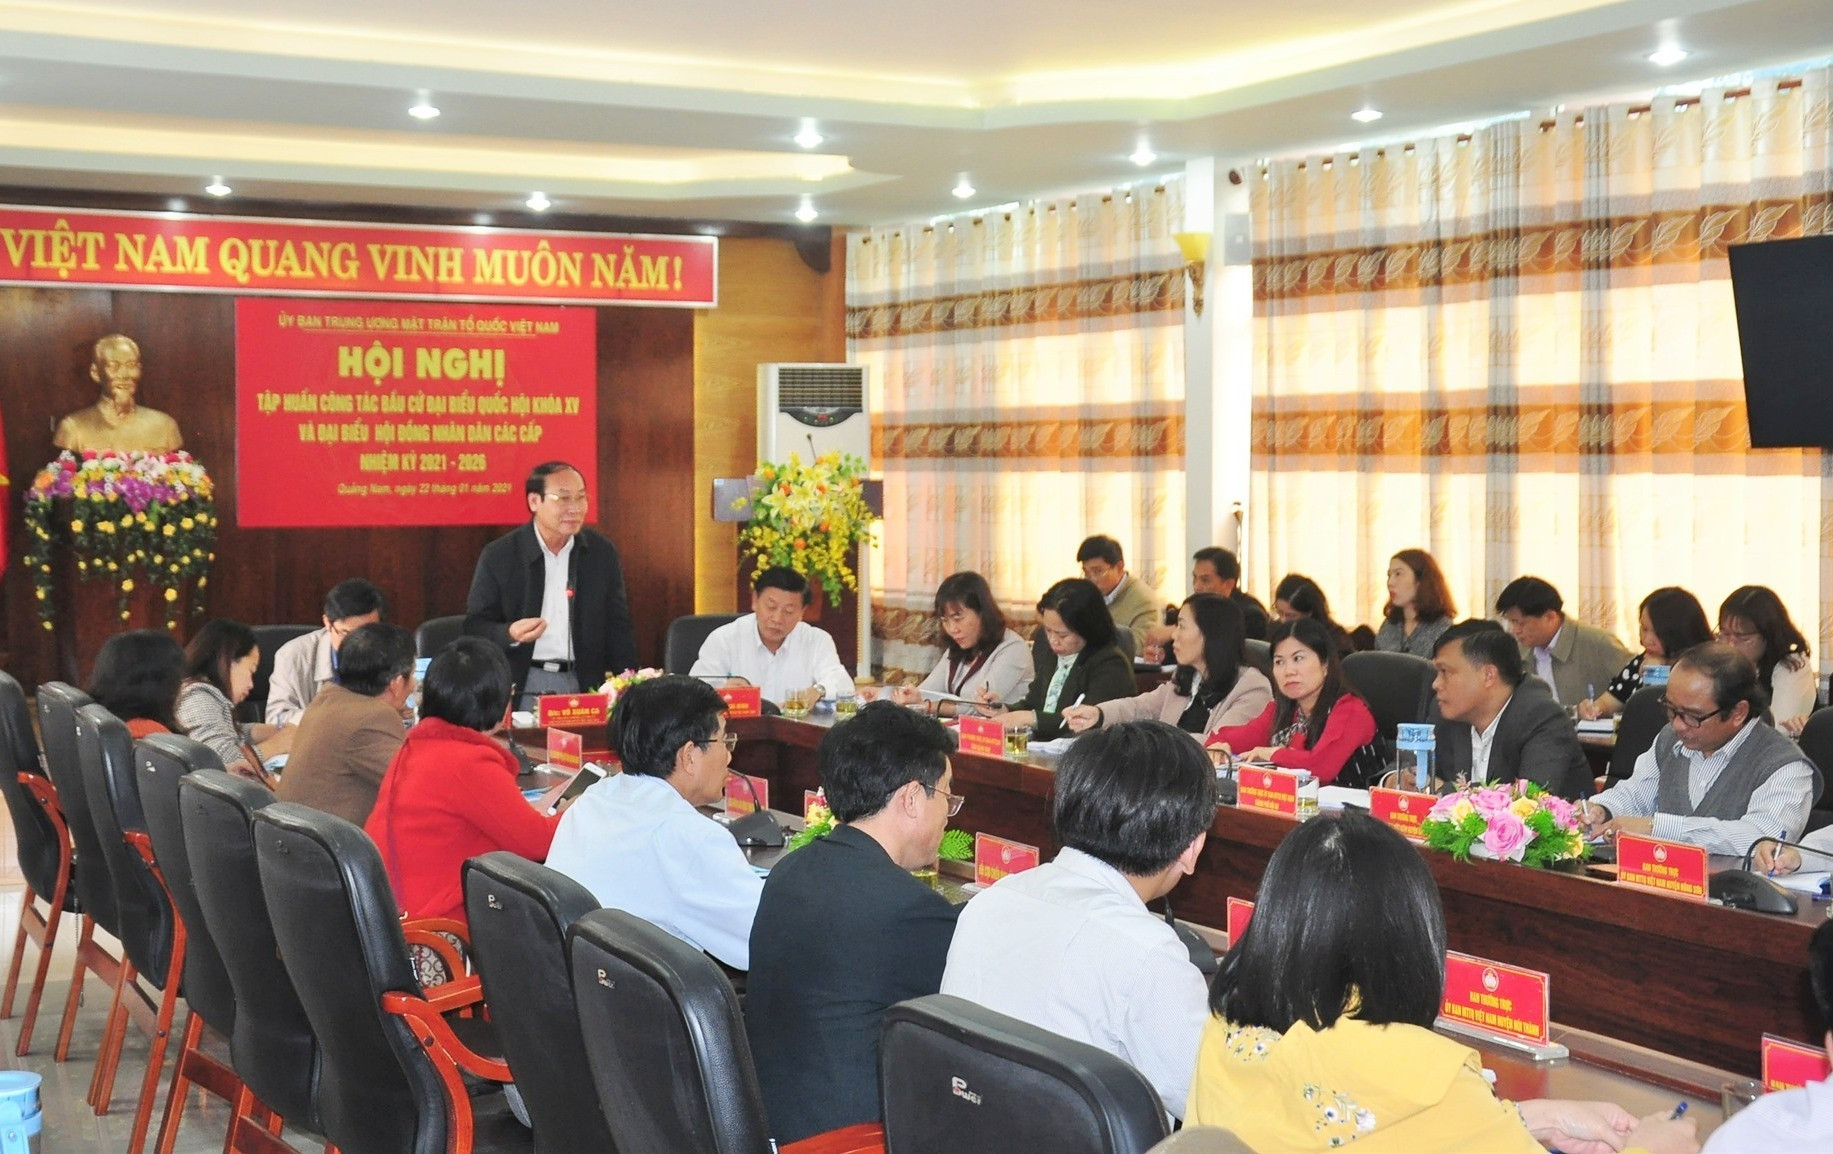 Chủ tịch Ủy ban MTTQ Việt Nam tỉnh Võ Xuân Ca quán triệt một số nội dung xung quanh công tác bầu cử với các đại biểu dự hội nghị tại điểm cầu Quảng Nam. Ảnh: VINH ANH